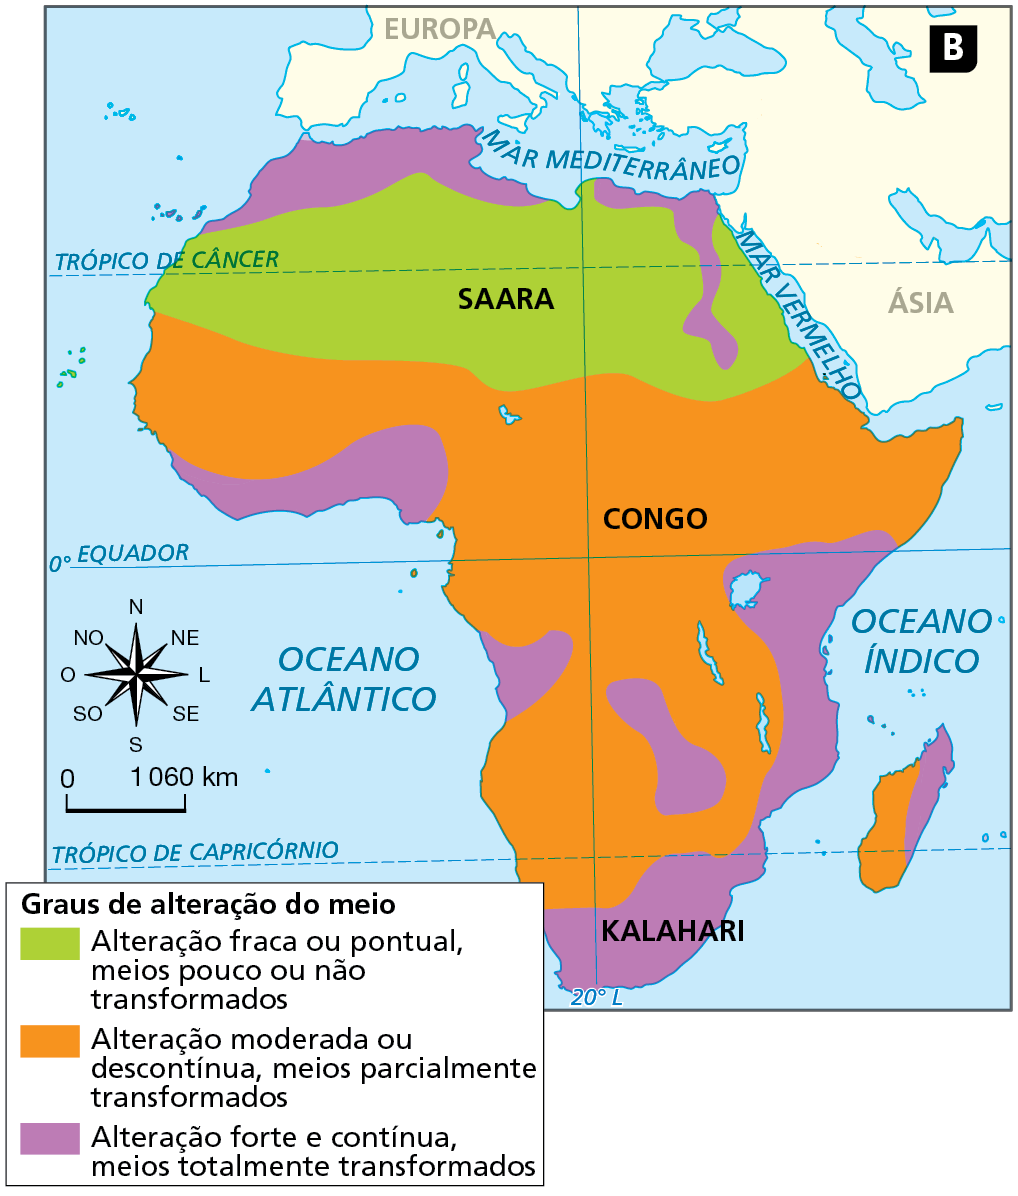 Mapa B. África: alteração antrópica da vegetação natural.  
Mapa do continente africano representando os graus de alteração do meio natural pela ação antrópica.
Graus de alteração do meio:
Alteração fraca ou pontual, meios pouco ou não transformados, em verde: faixa norte, na altura do Trópico de Câncer, na região do Saara. 
Alteração moderada ou descontinua, meios parcialmente transformados, em laranja: maior faixa que se estende do sul, abrange toda região central, centro-leste e centro-oeste; na faixa oeste da região da ilha de Madagascar, a sudeste do continente, no oceano Índico.  
Alteração forte e contínua, meios totalmente transformados, em roxo: extremo norte, na costa do mediterrâneo e reentrância na faixa leste da região norte, ao longo do vale do Rio Nilo, até o sul do trópico de Câncer; extremo sul do continente, na região do Kalahari; leste da ilha de Madagascar; extremo leste, centro-sul e costa do oceano atlântico, em porções ao norte e ao sul da Linha do Equador.  
À esquerda, rosa dos ventos e escala de 0 a 1.060 quilômetros.